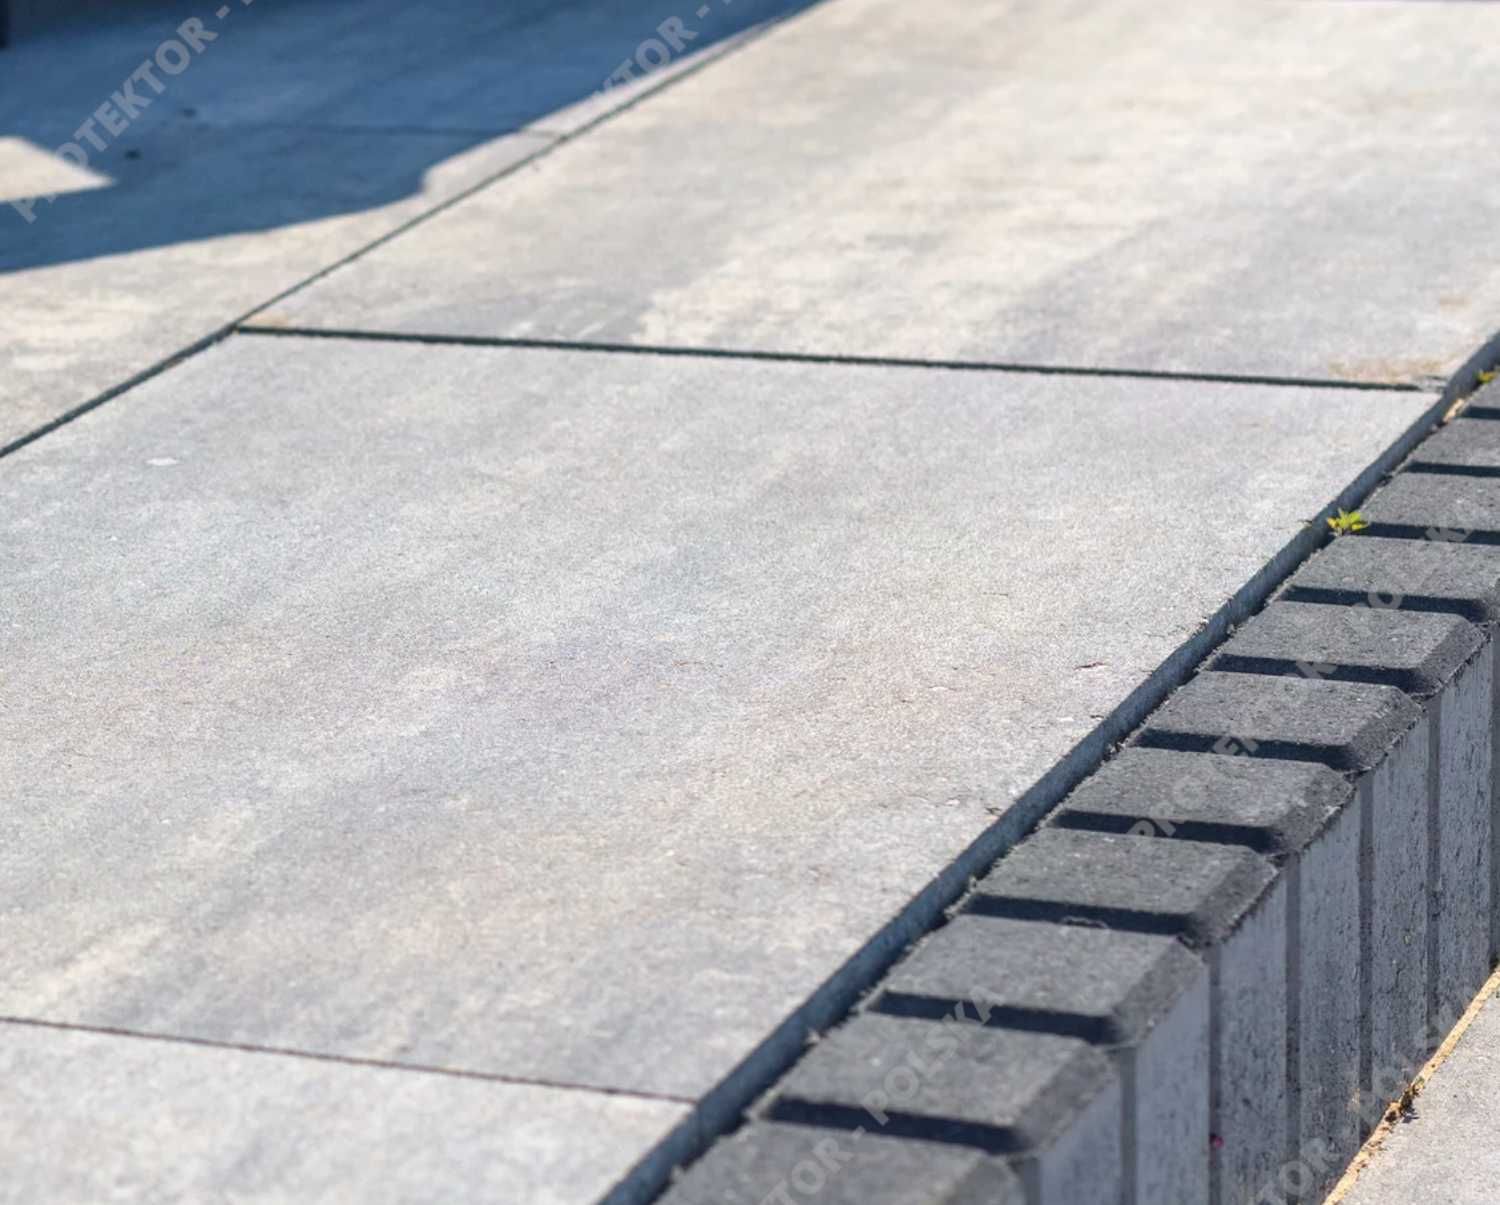 płyta tarasowa MAGNA Bruk betonowa deptak chodnik plac kostka brukowa